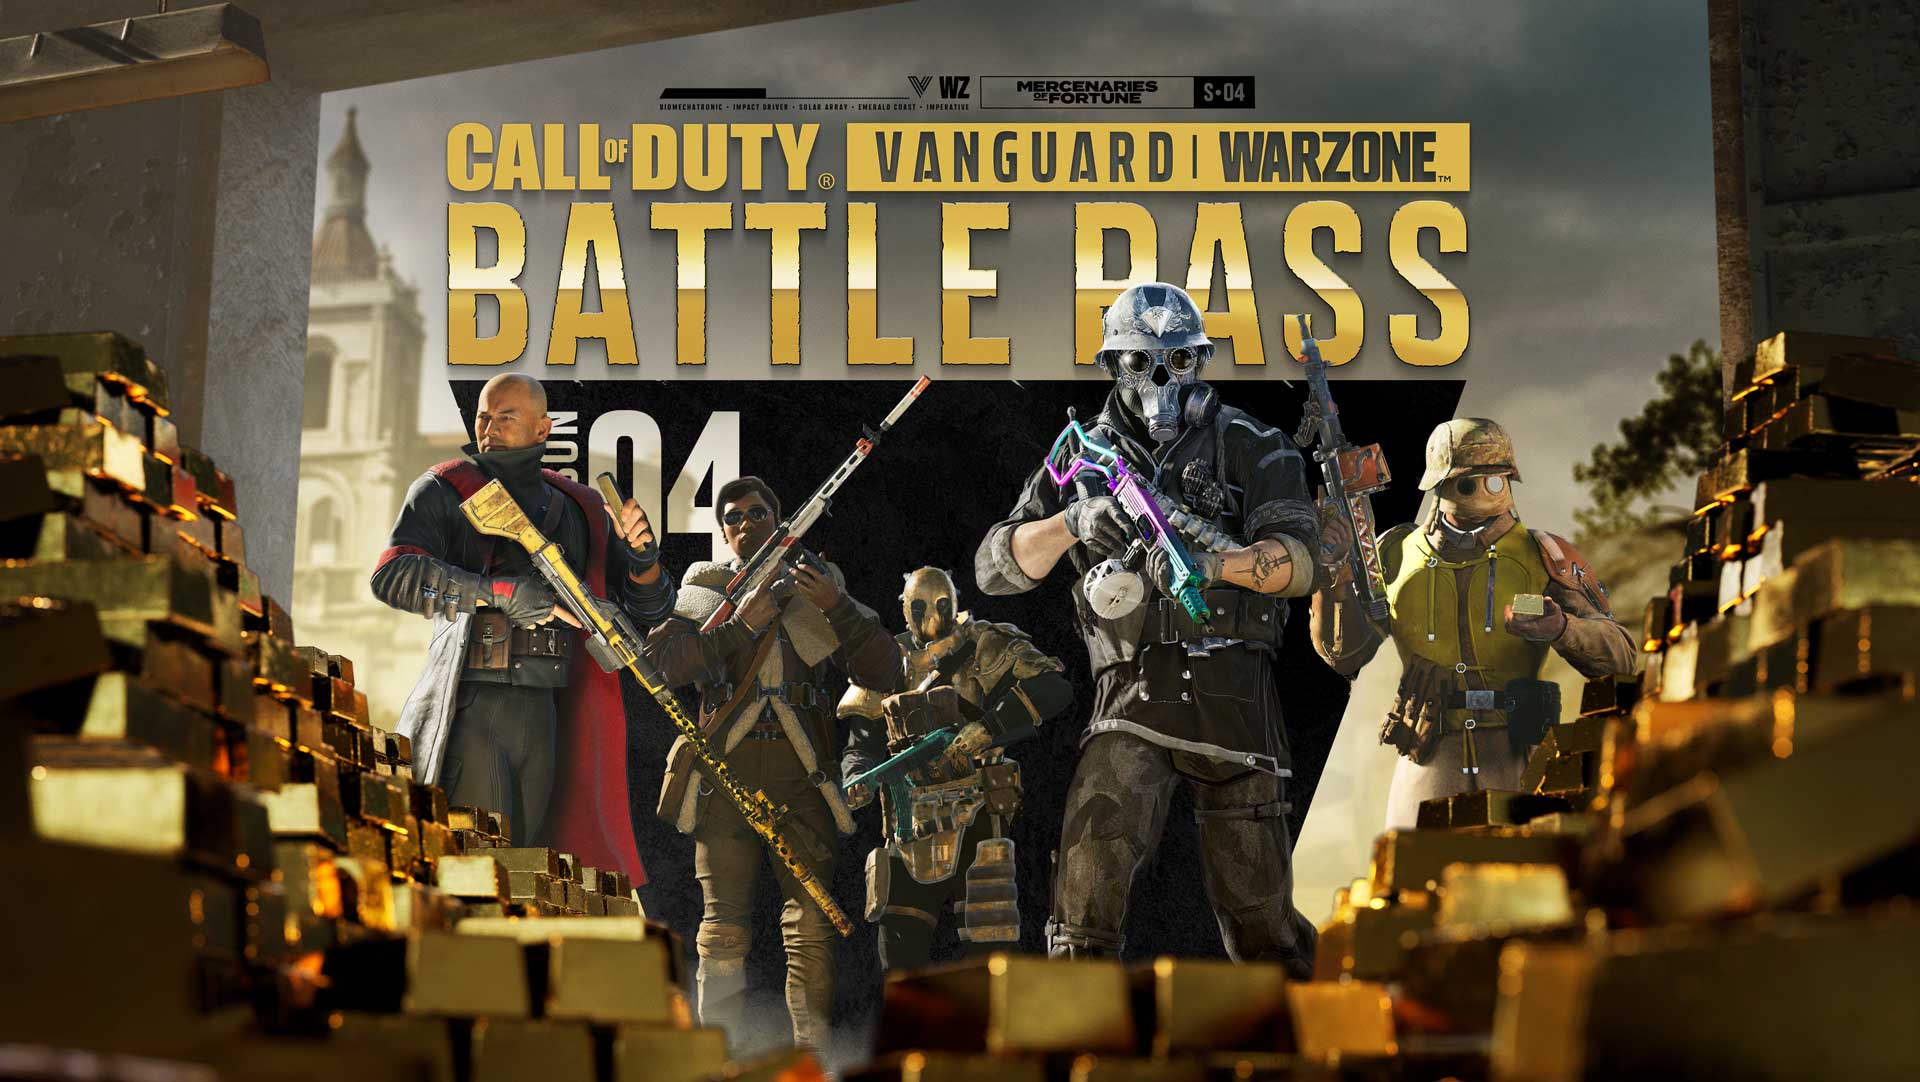 Call of Duty: Vanguard & Warzone – รายละเอียดของ Battle Pass และบันเดิลเหล่าทหารรับจ้างผู้มั่งคั่ง